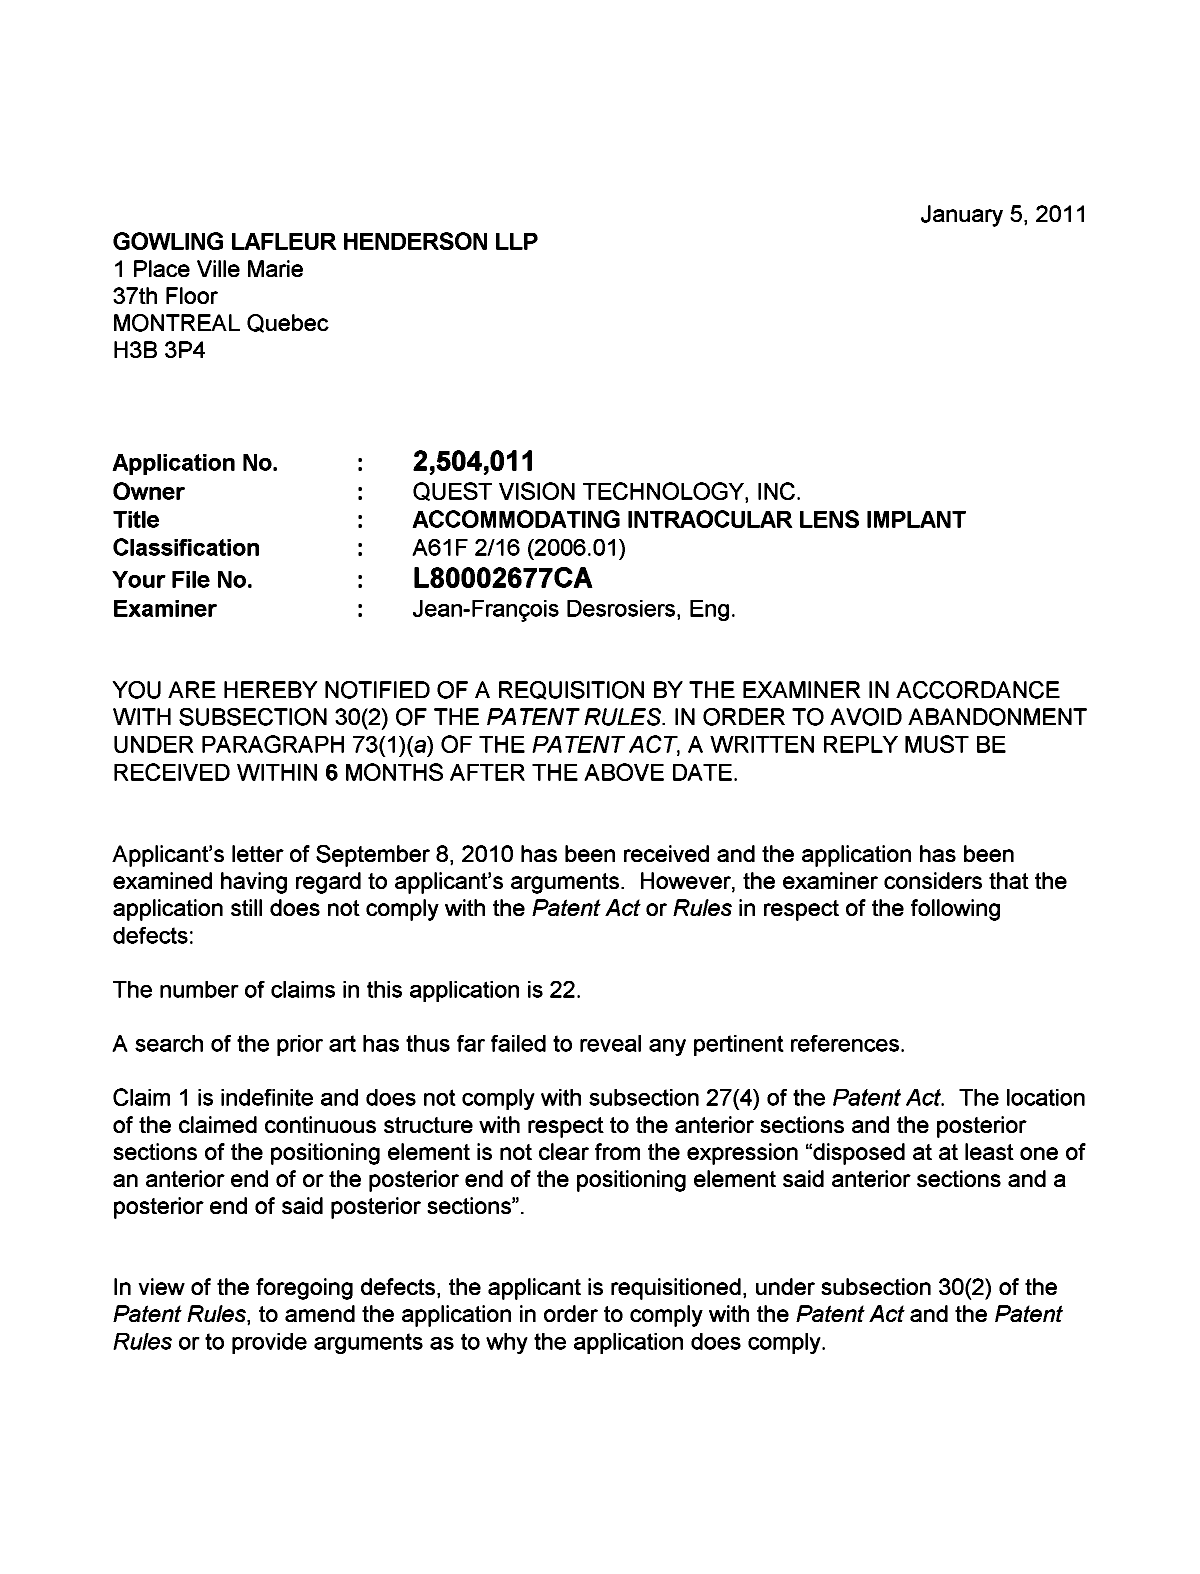 Document de brevet canadien 2504011. Poursuite-Amendment 20110105. Image 1 de 2